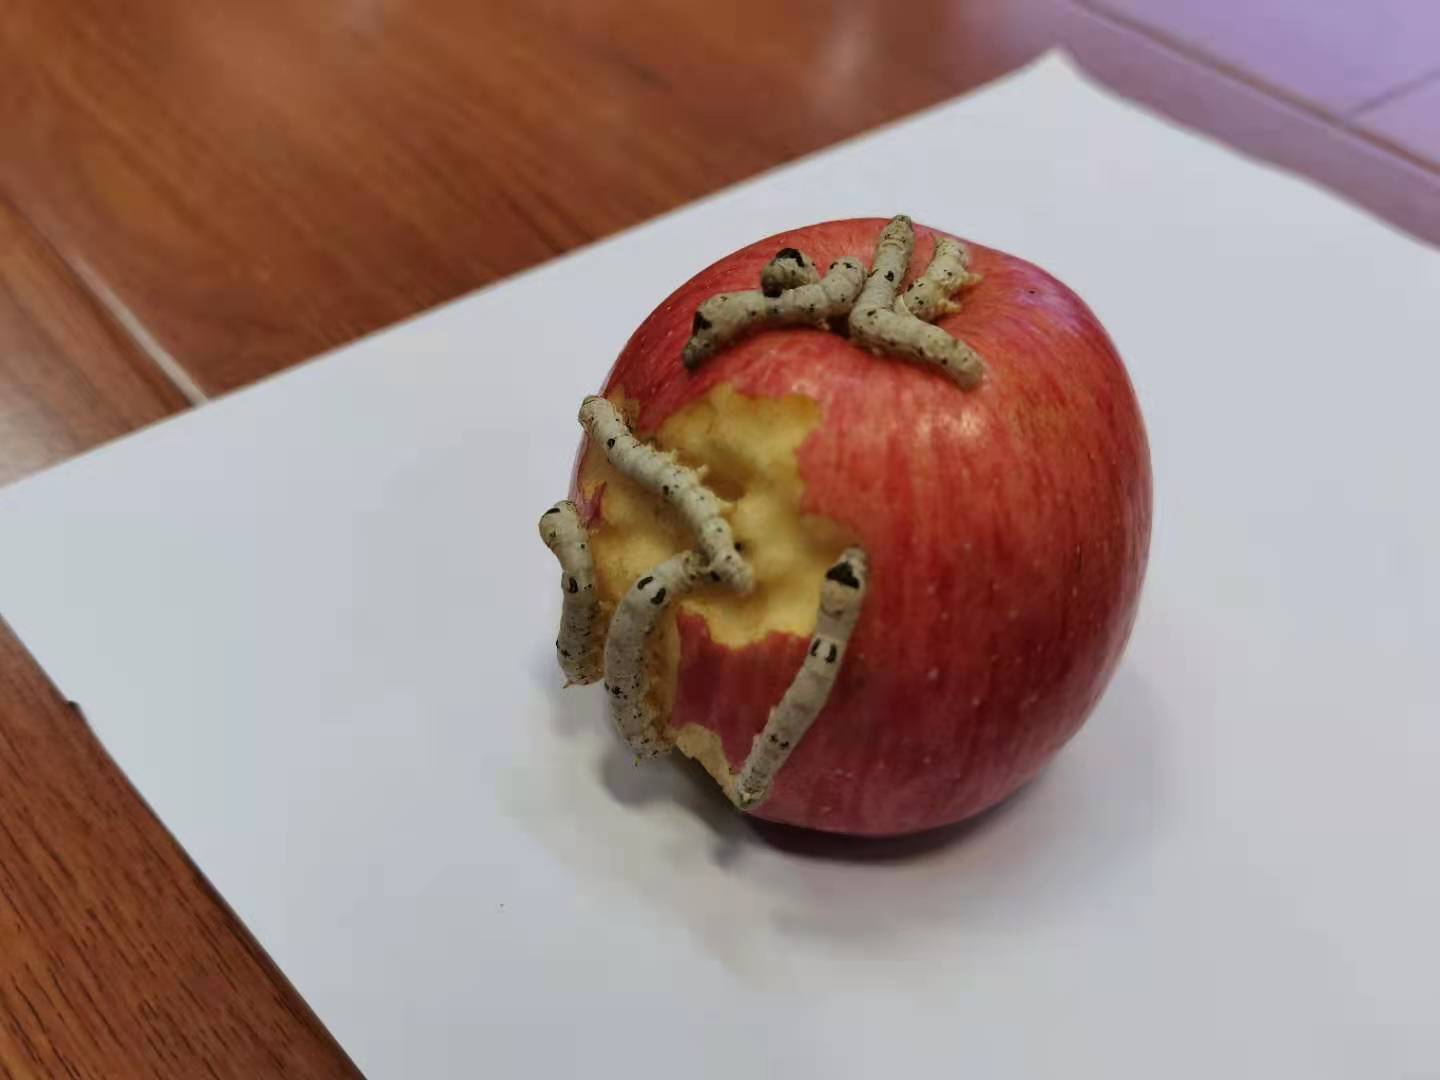 吃苹果的蚕宝宝系列课程——蚕桑文化